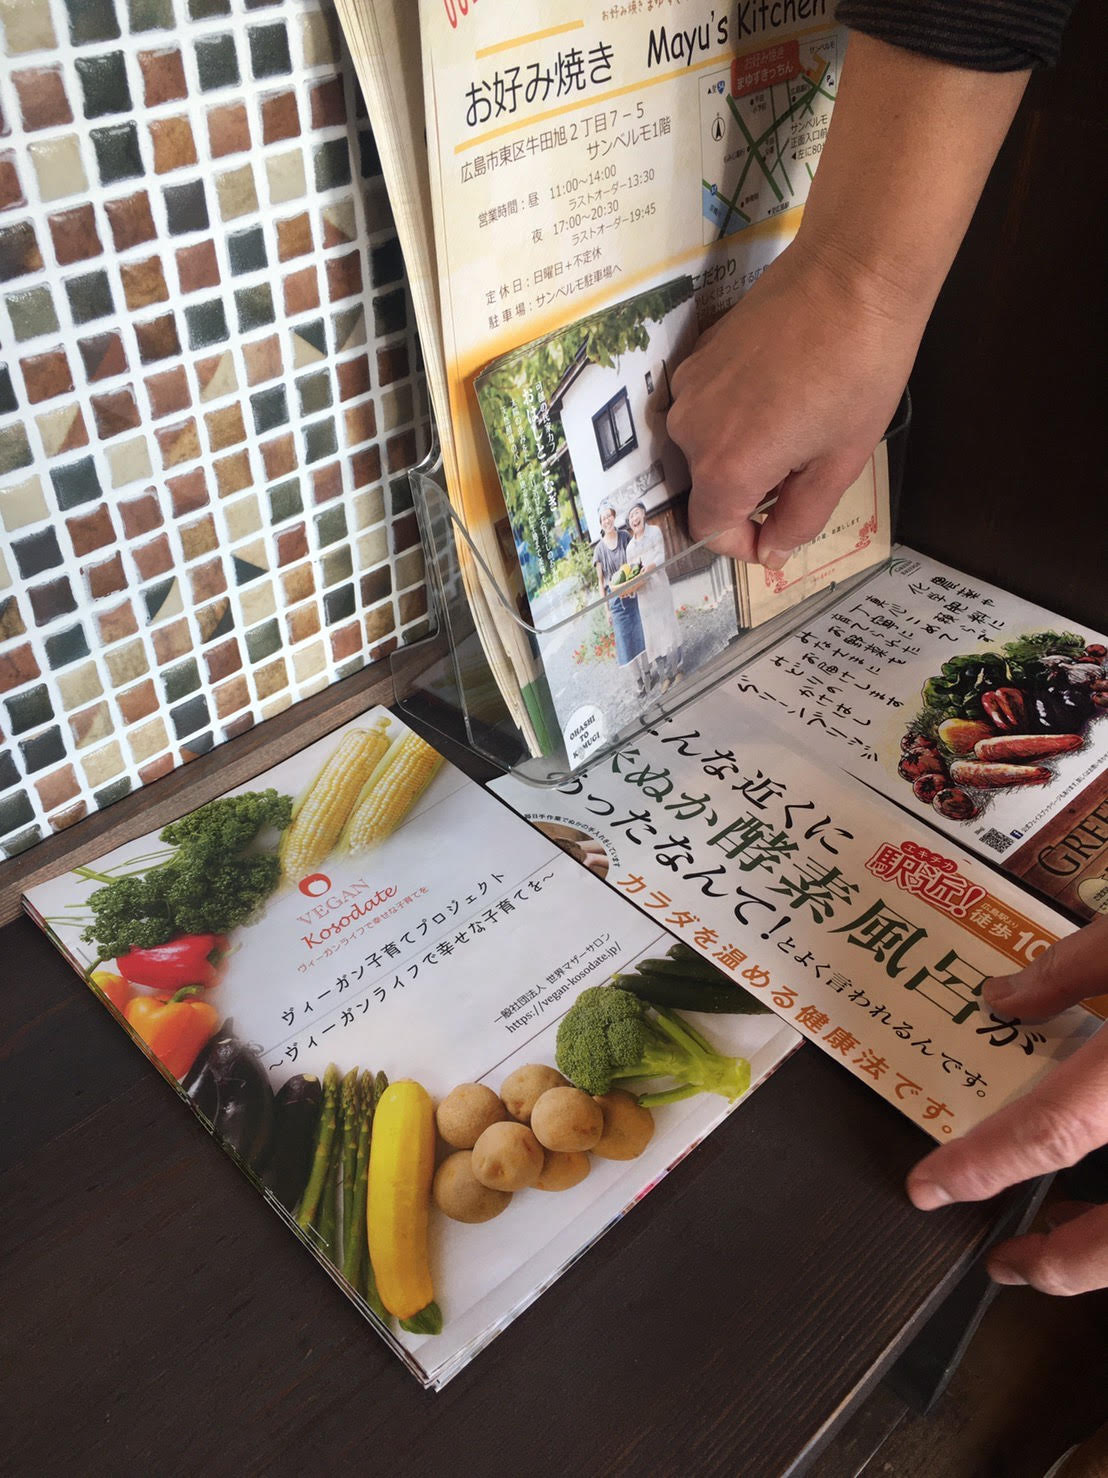 広島市のオーガニックカフェ「おやつカフェ yurumu。」にヴィ―ガン子育てパンフレットが置かれています